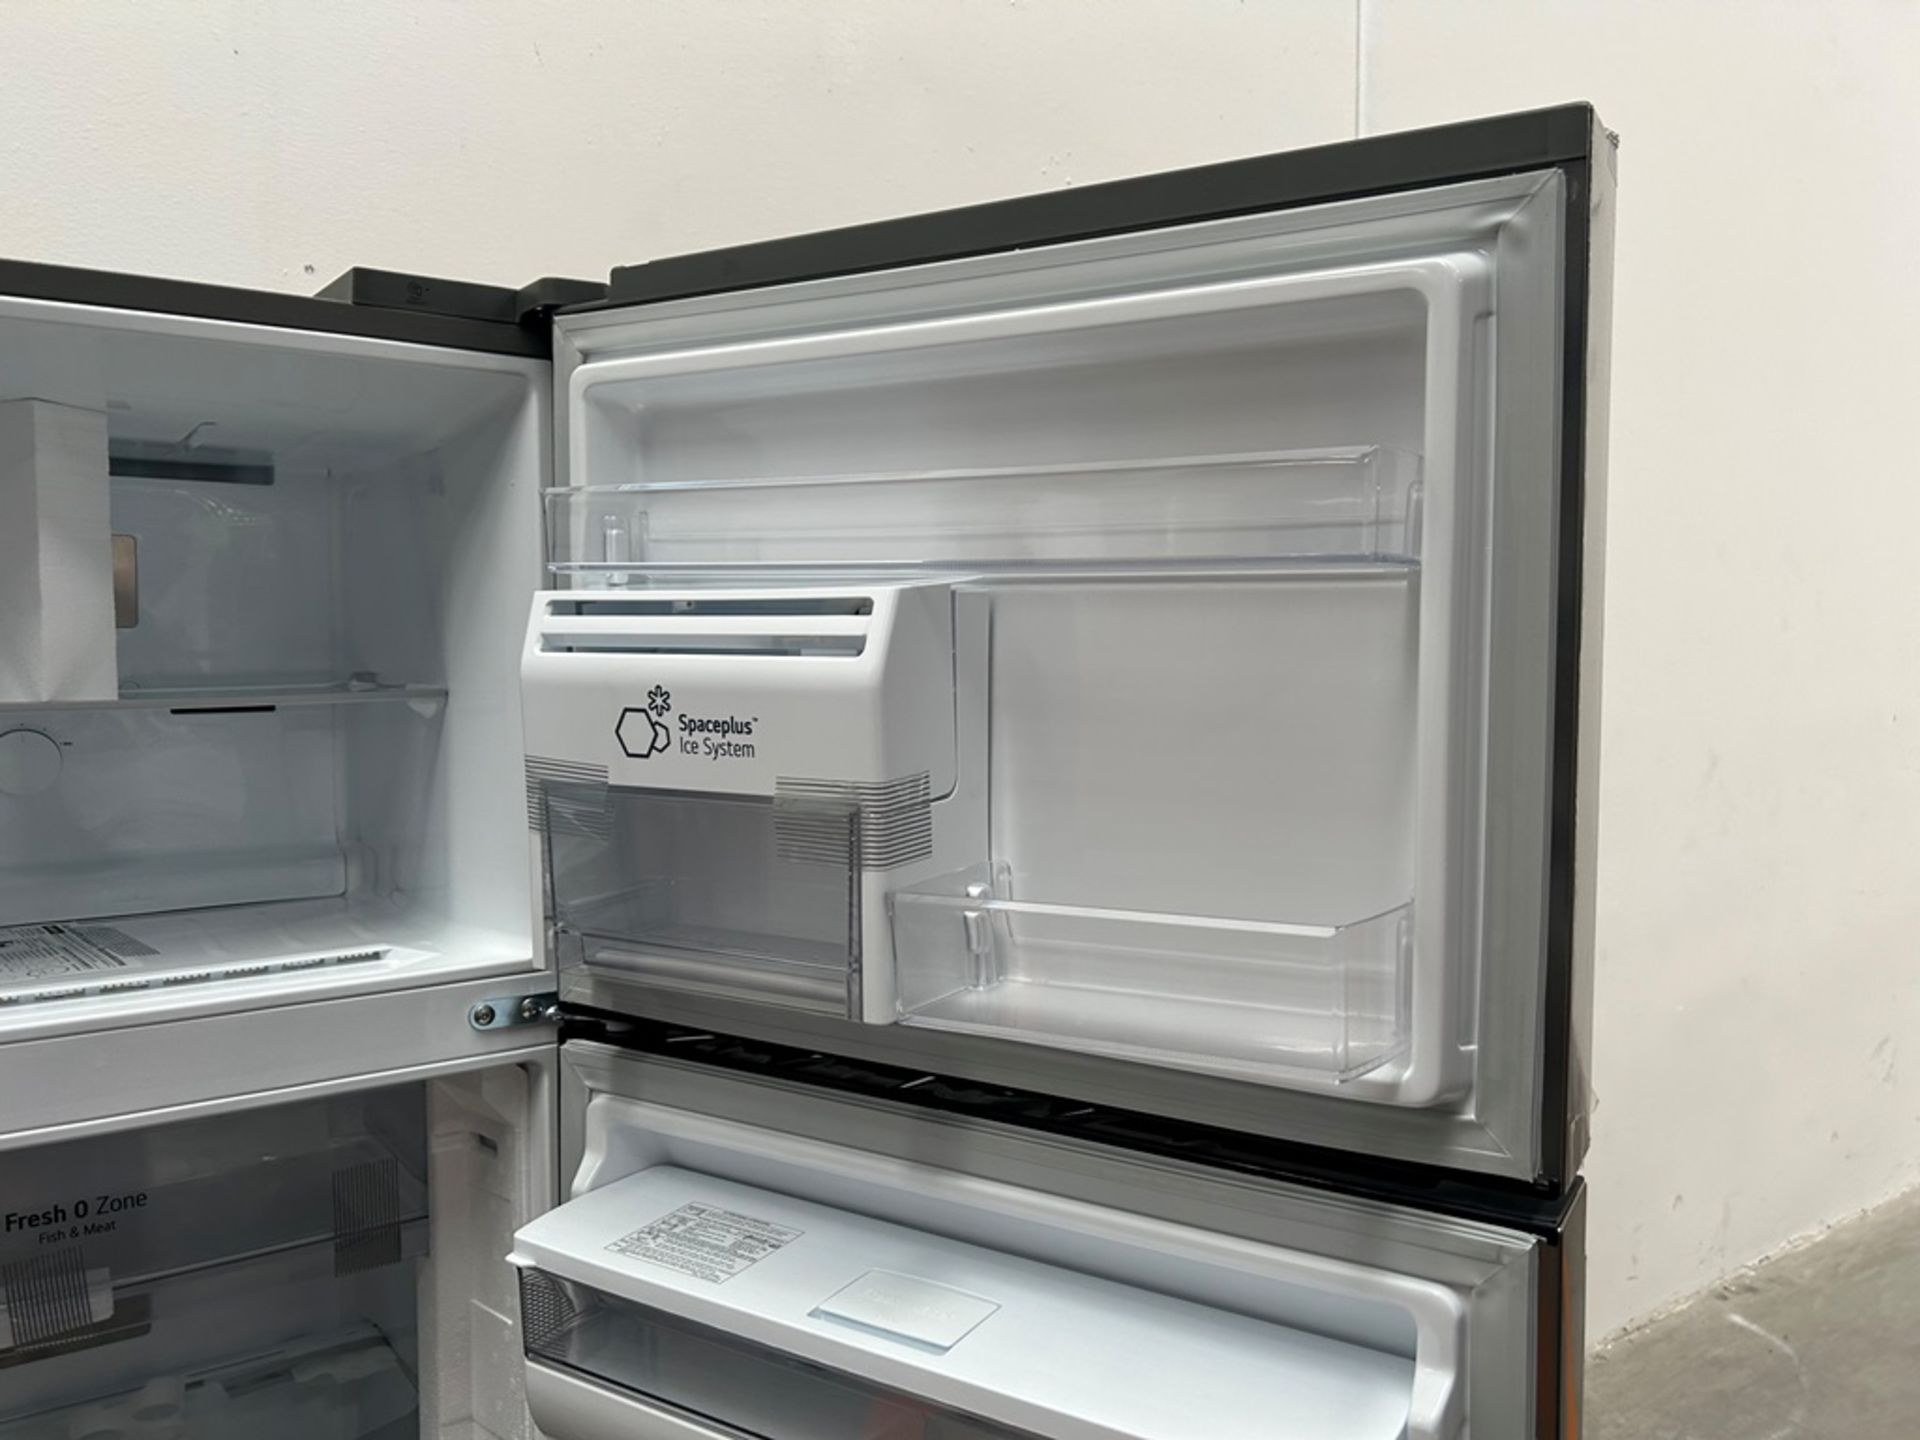 (NUEVO) Refrigerador con dispensador de agua Marca LG, Modelo VT40AWP, Serie 1S414, Color GRIS - Image 8 of 11